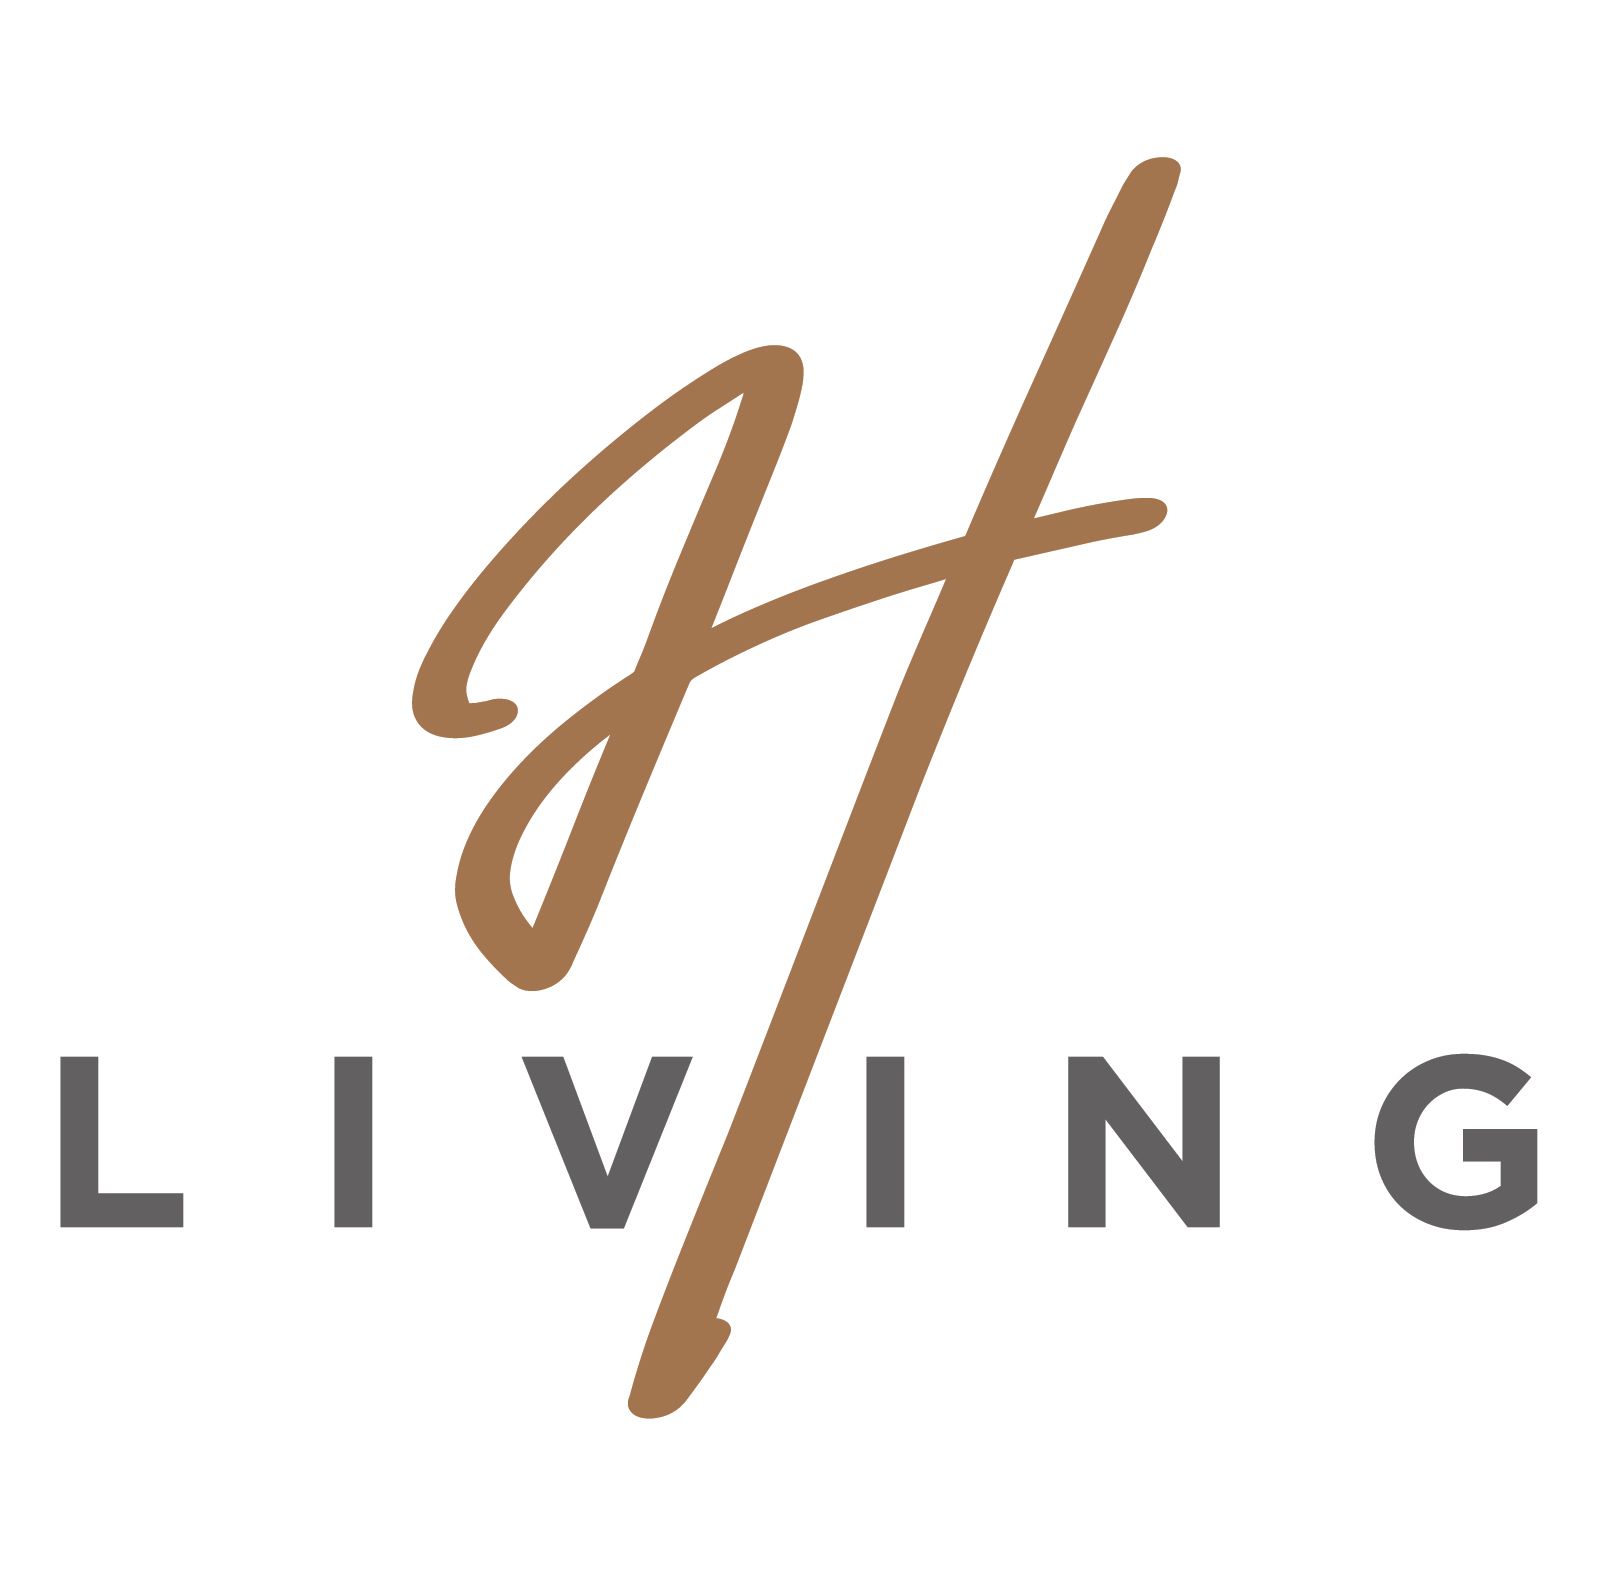 H living logo